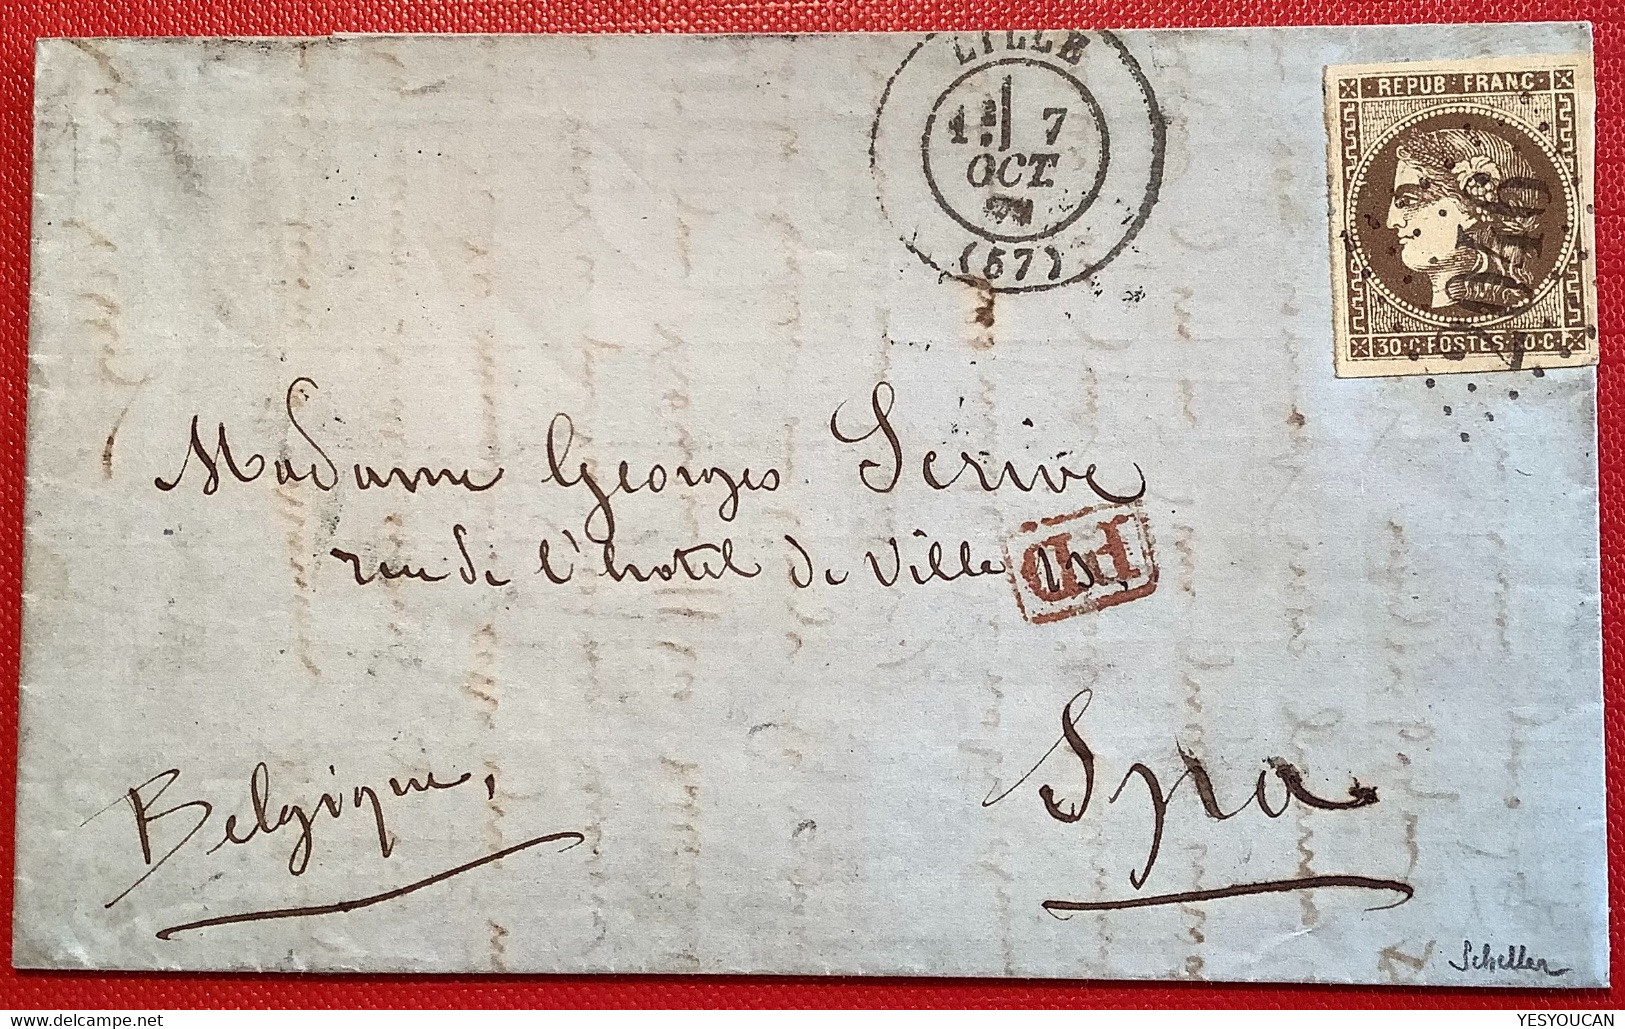 Nr.47 SUPERBE lettre LILLE 1871 (57)1870 30c brun émission Bordeaux pour Spa, Belgique, signé Scheller (France cover war